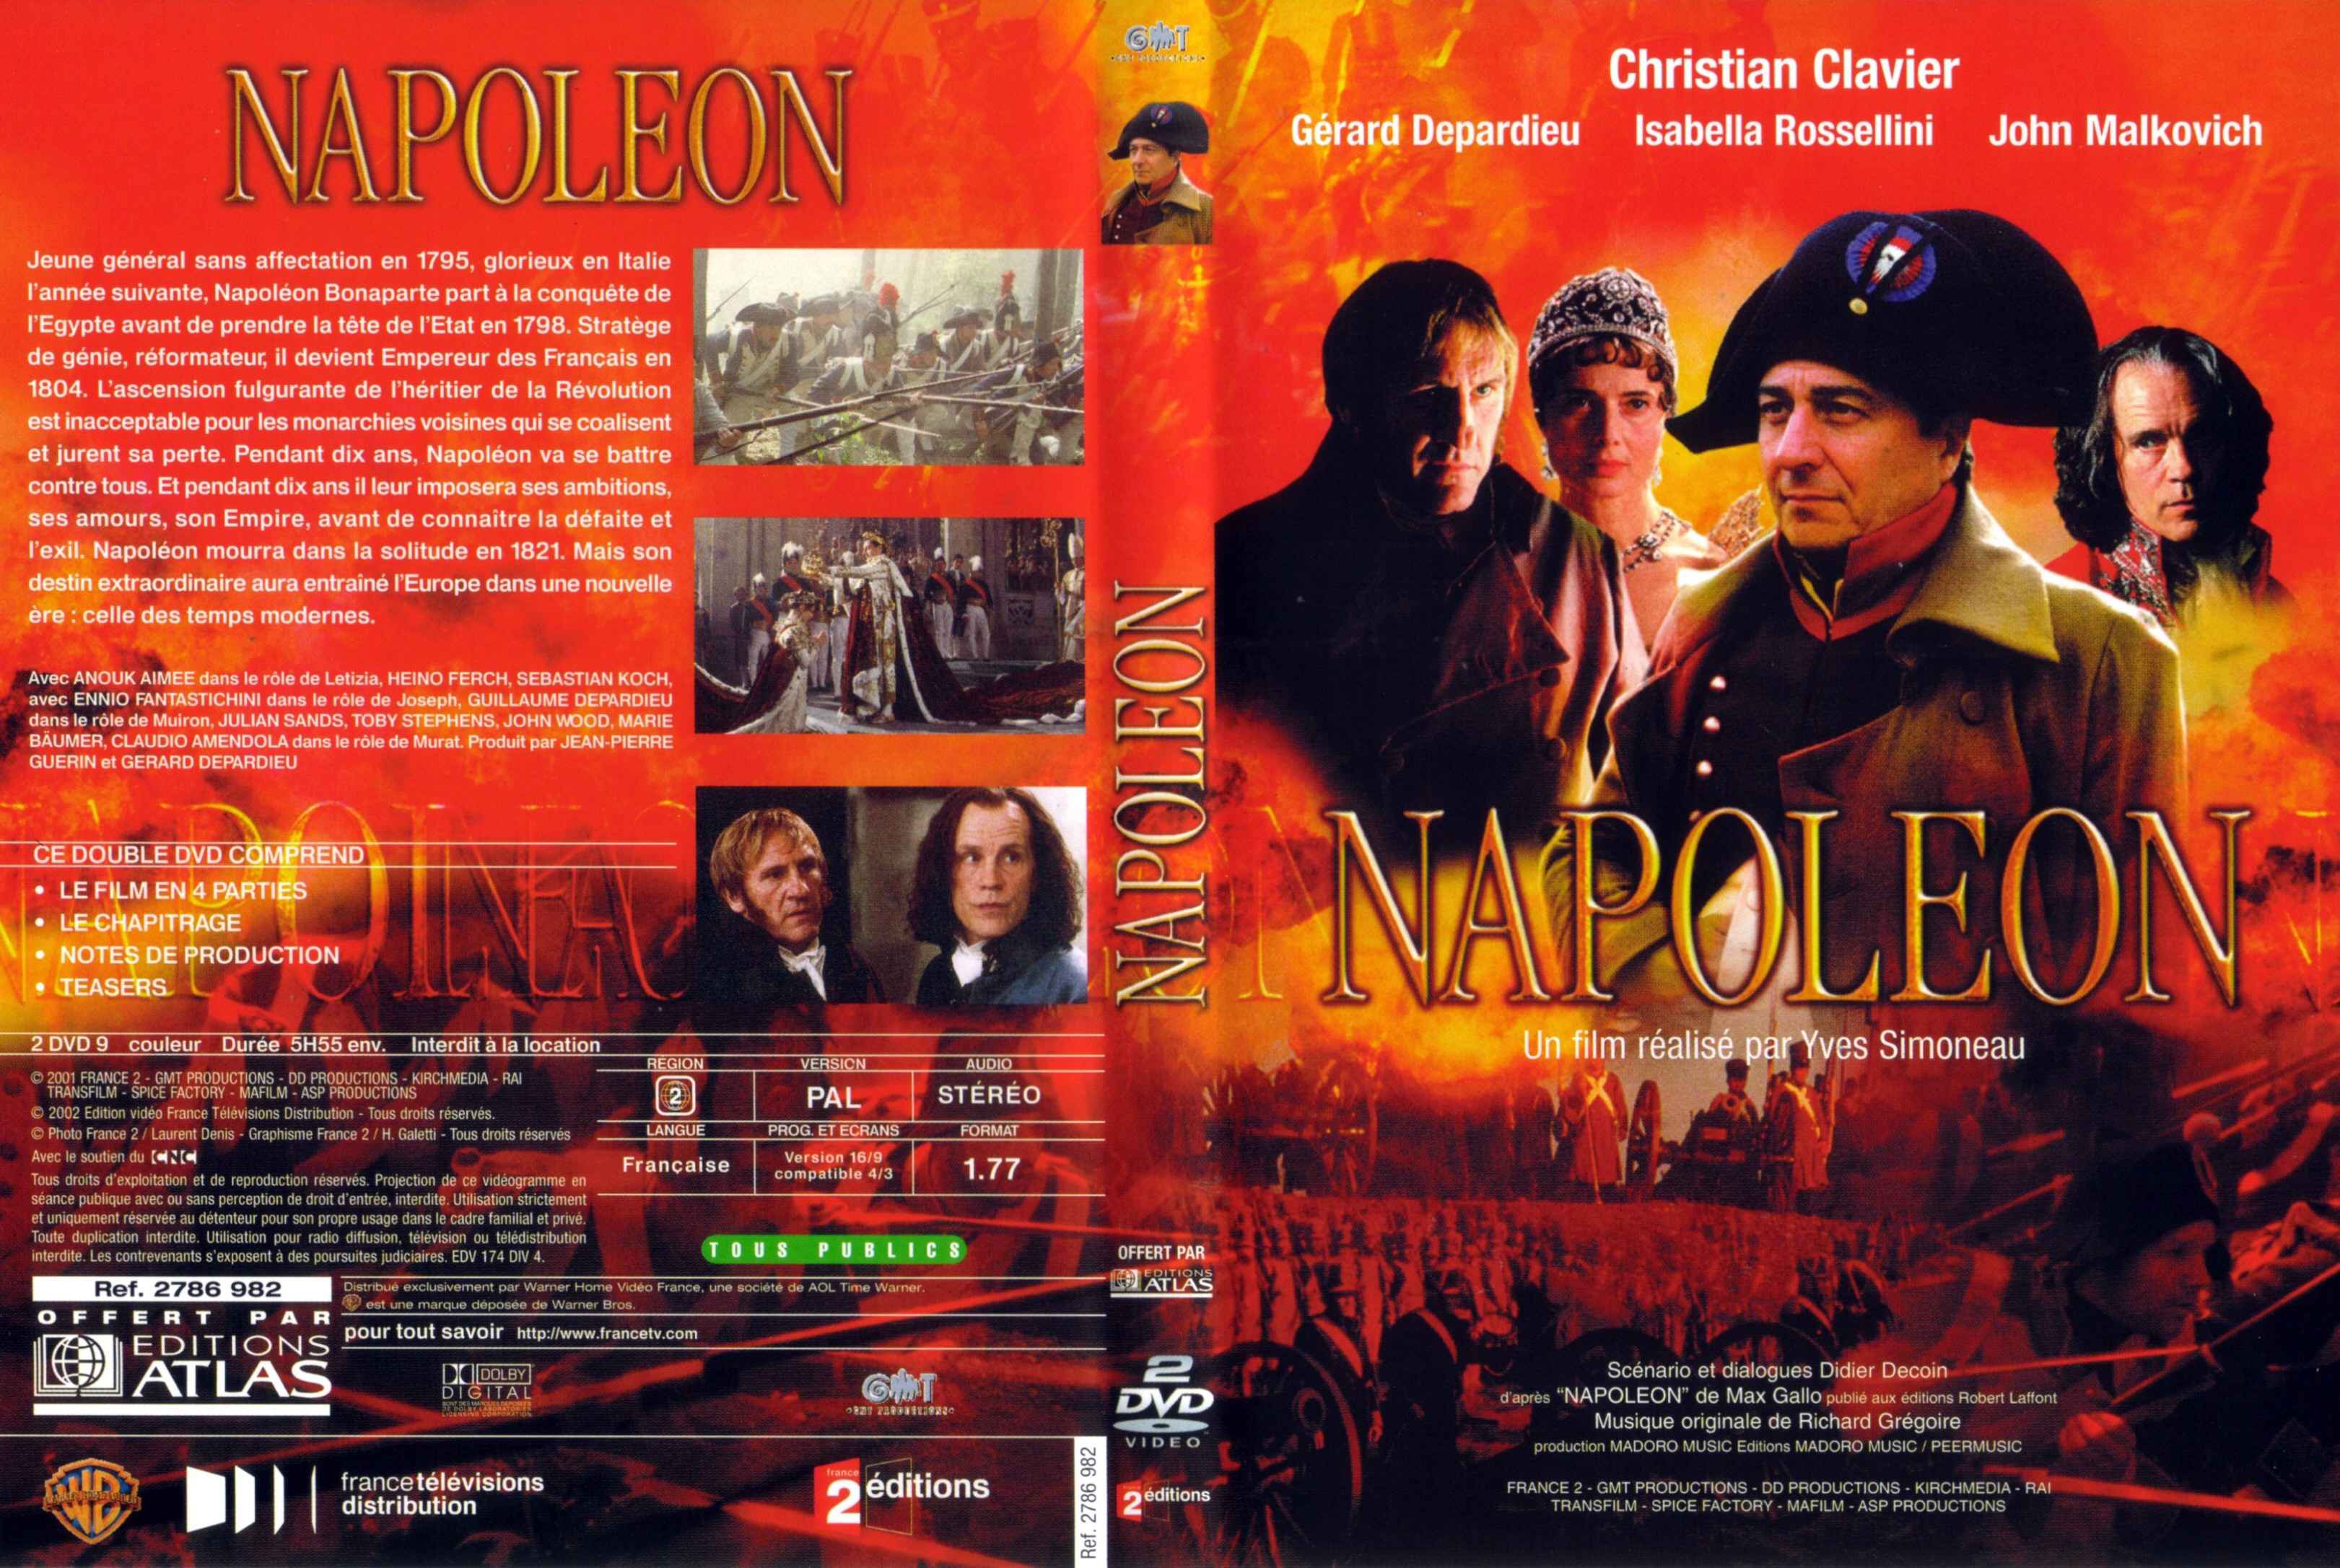 Jaquette DVD de Napoléon série tv Cinéma Passion